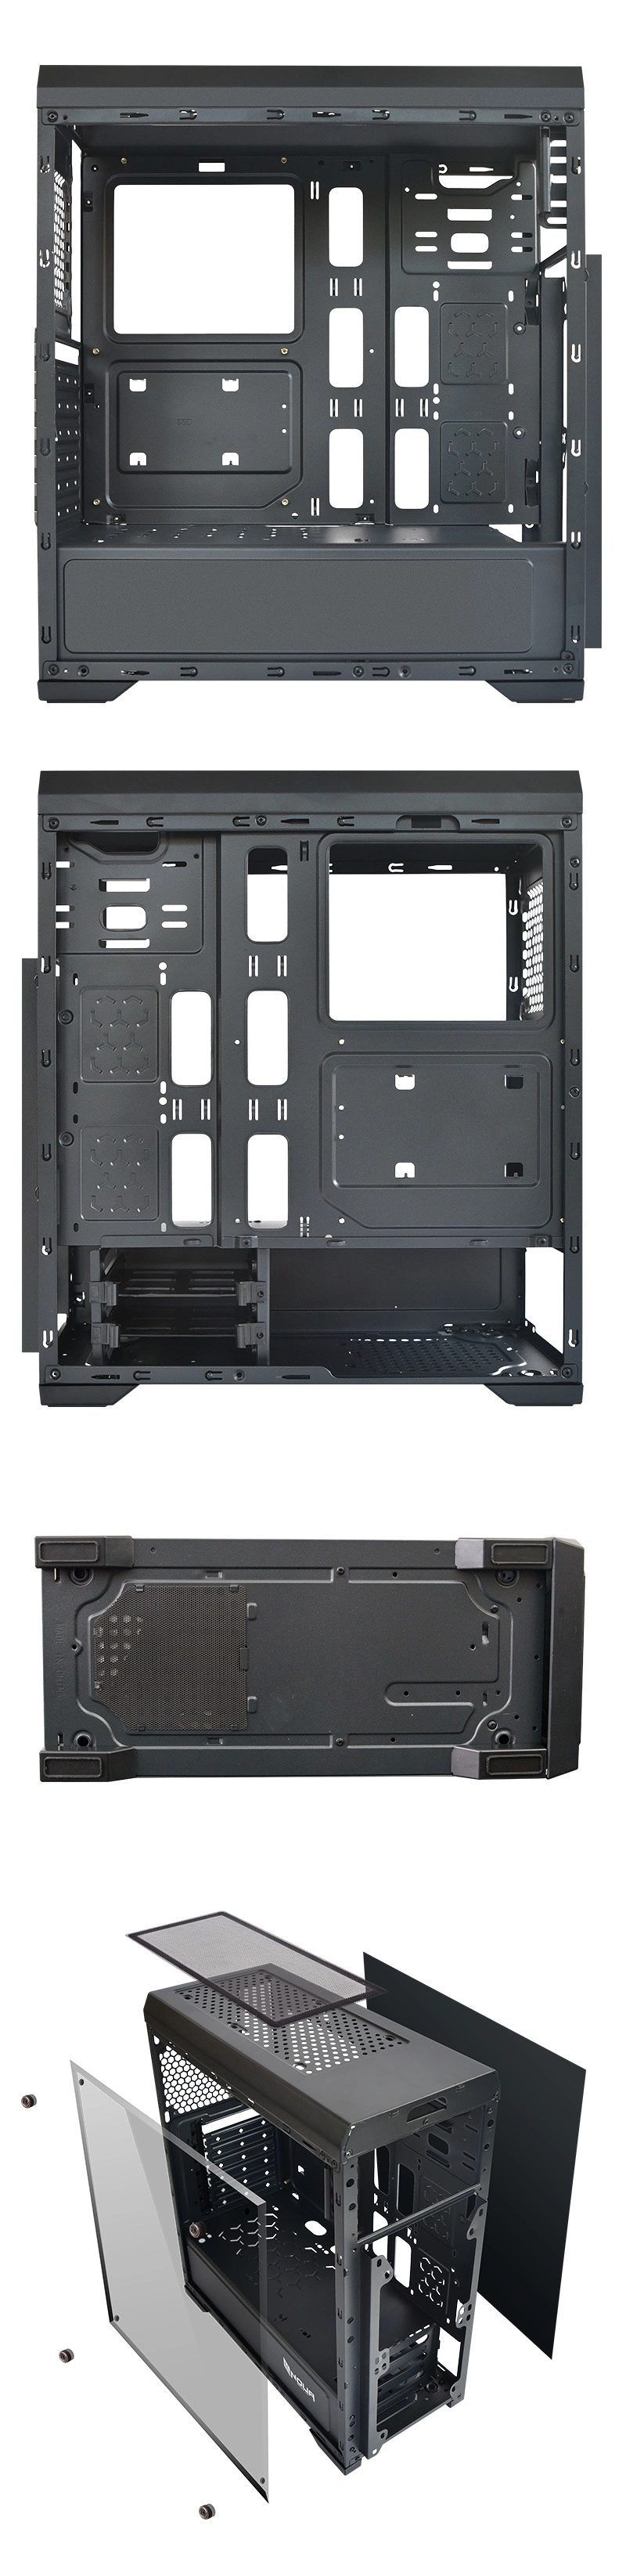 A49 Medium Tower Standard ATX Case Computer